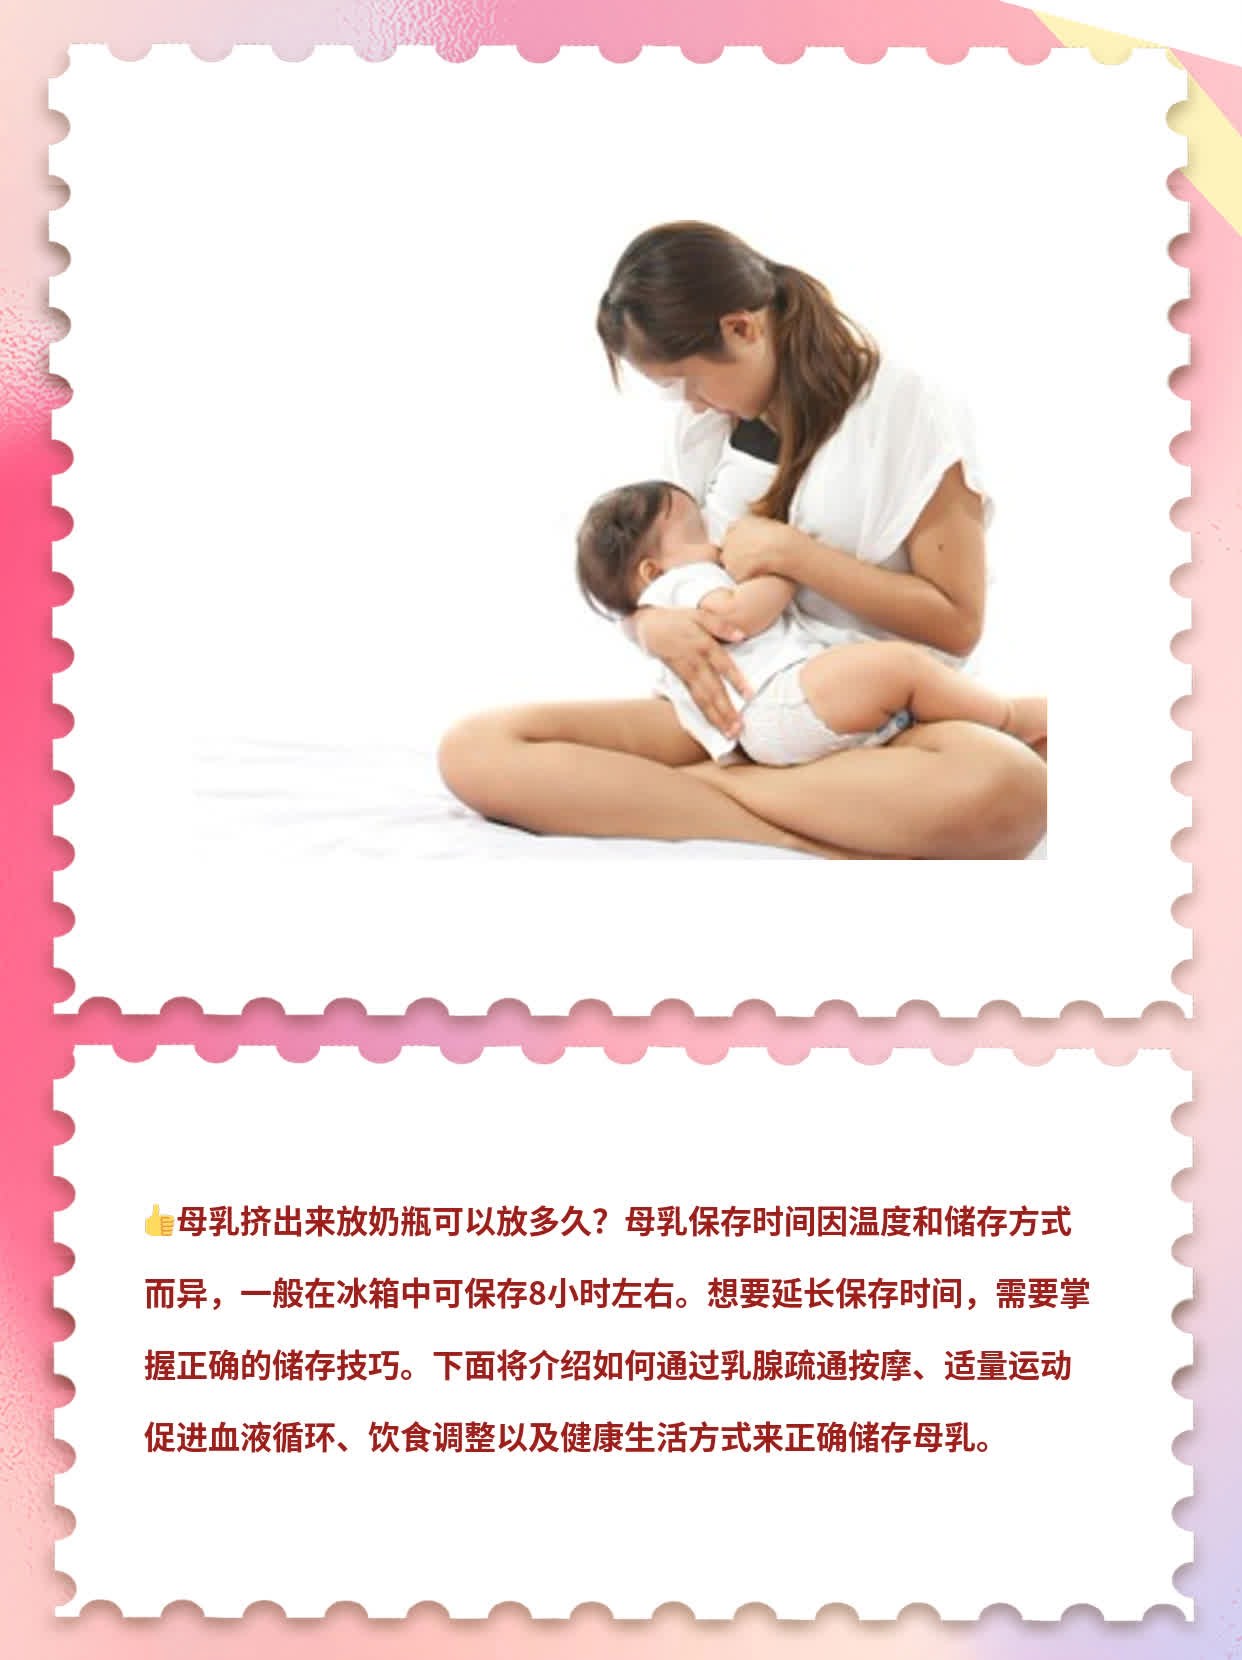 「母乳保存」：如何正确储存母乳？